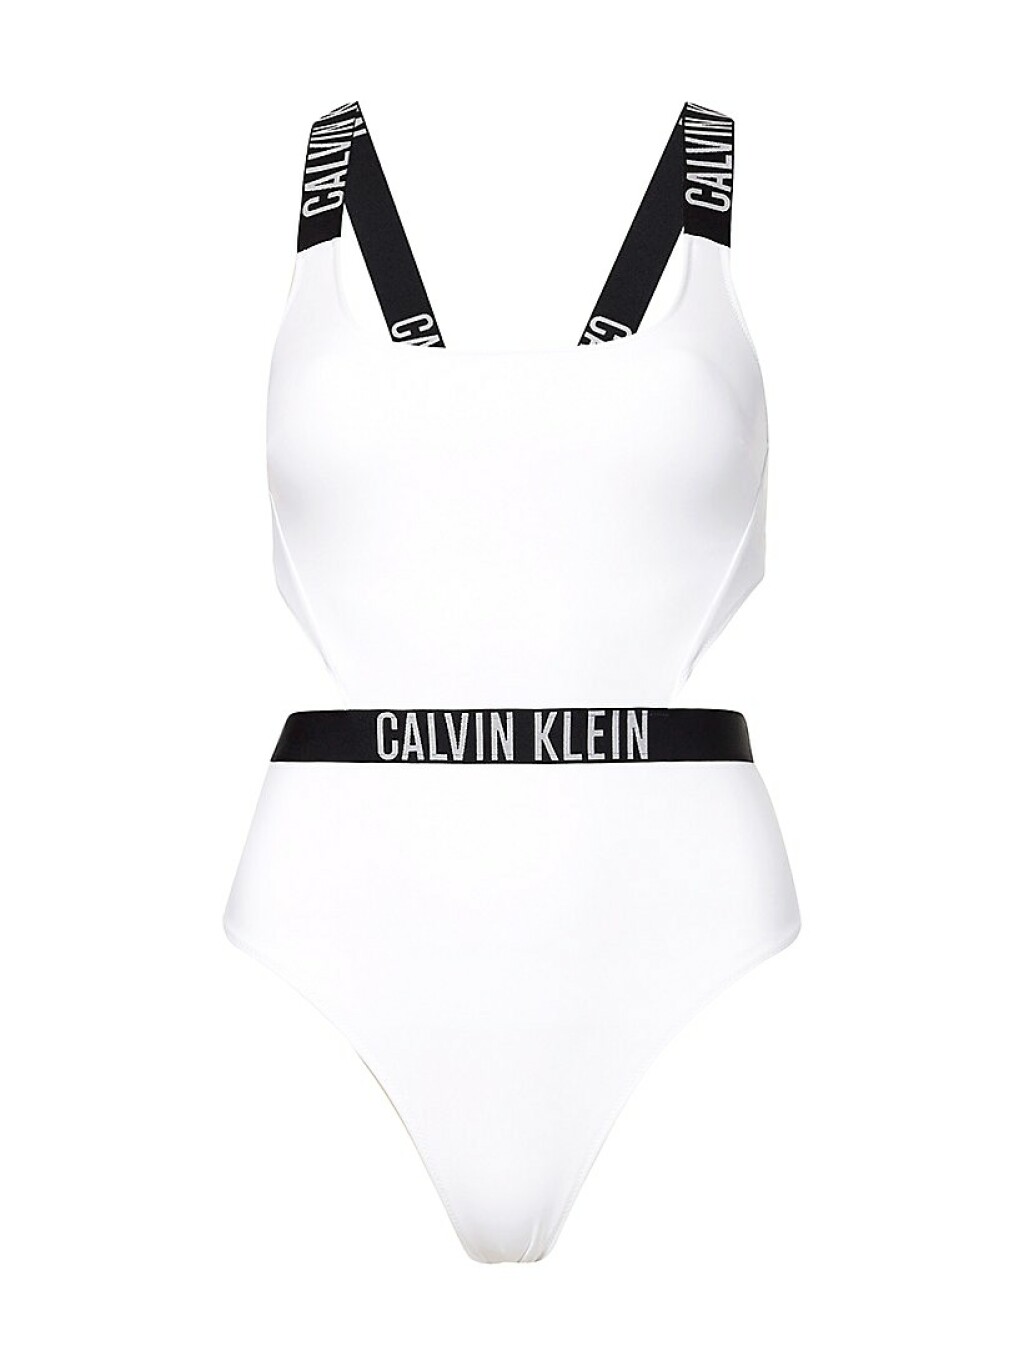 Calvin Klein (Fashion & Friends), 461,30 kn